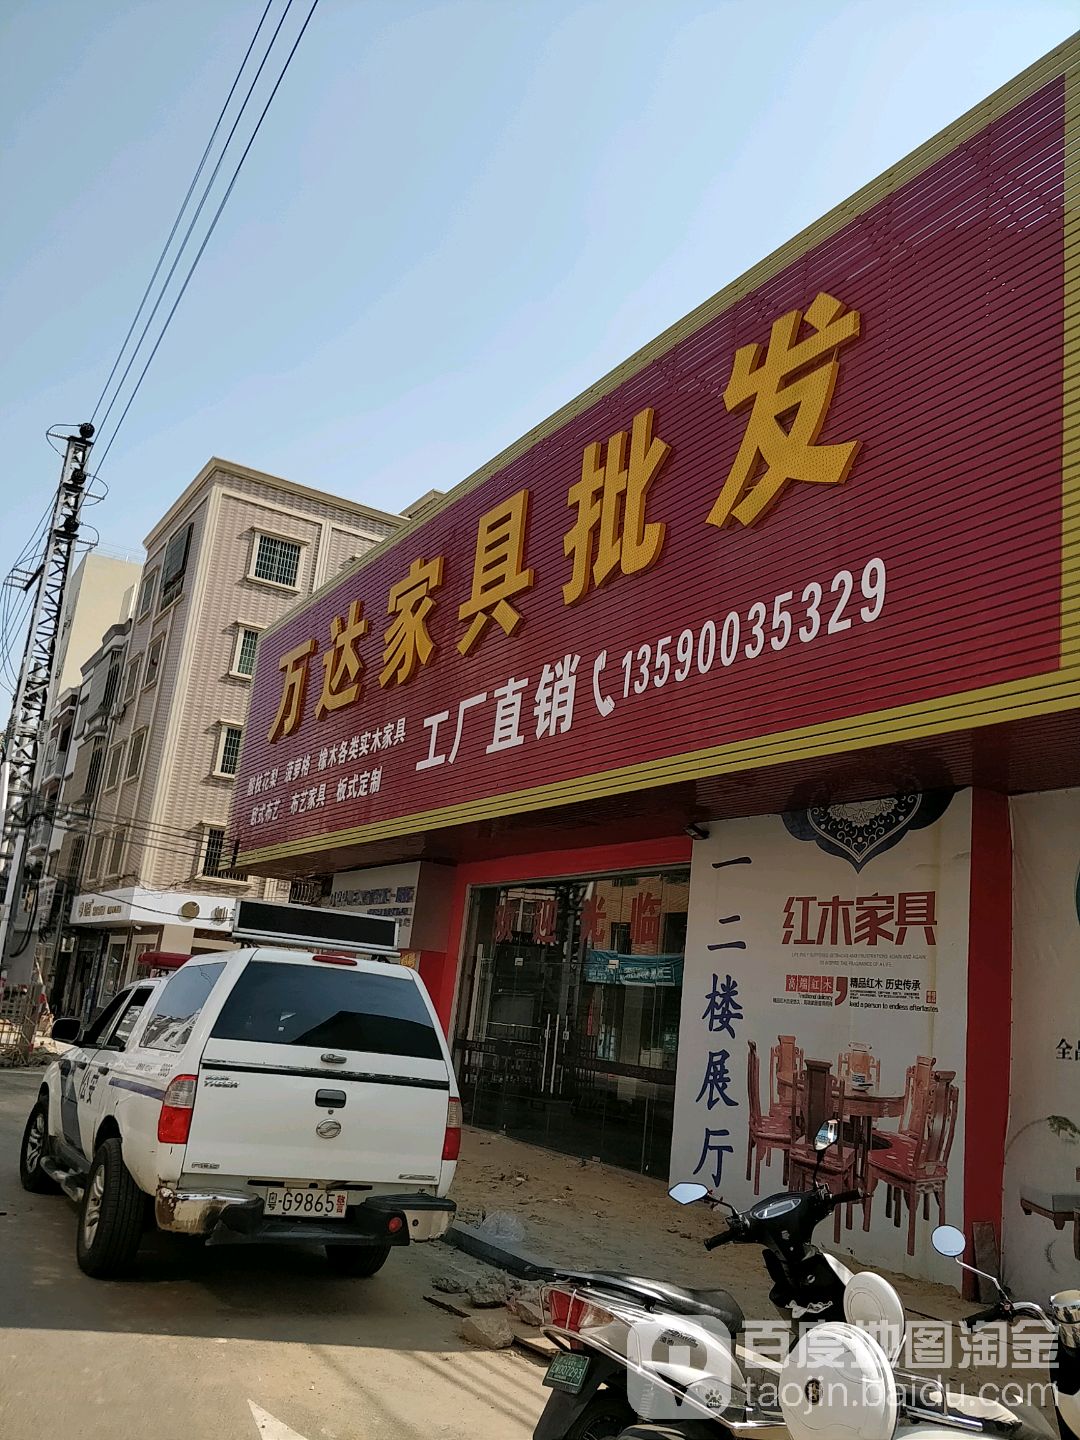 吴川市标签: 家具 购物 家居  万达家具批发共多少人浏览:3749445